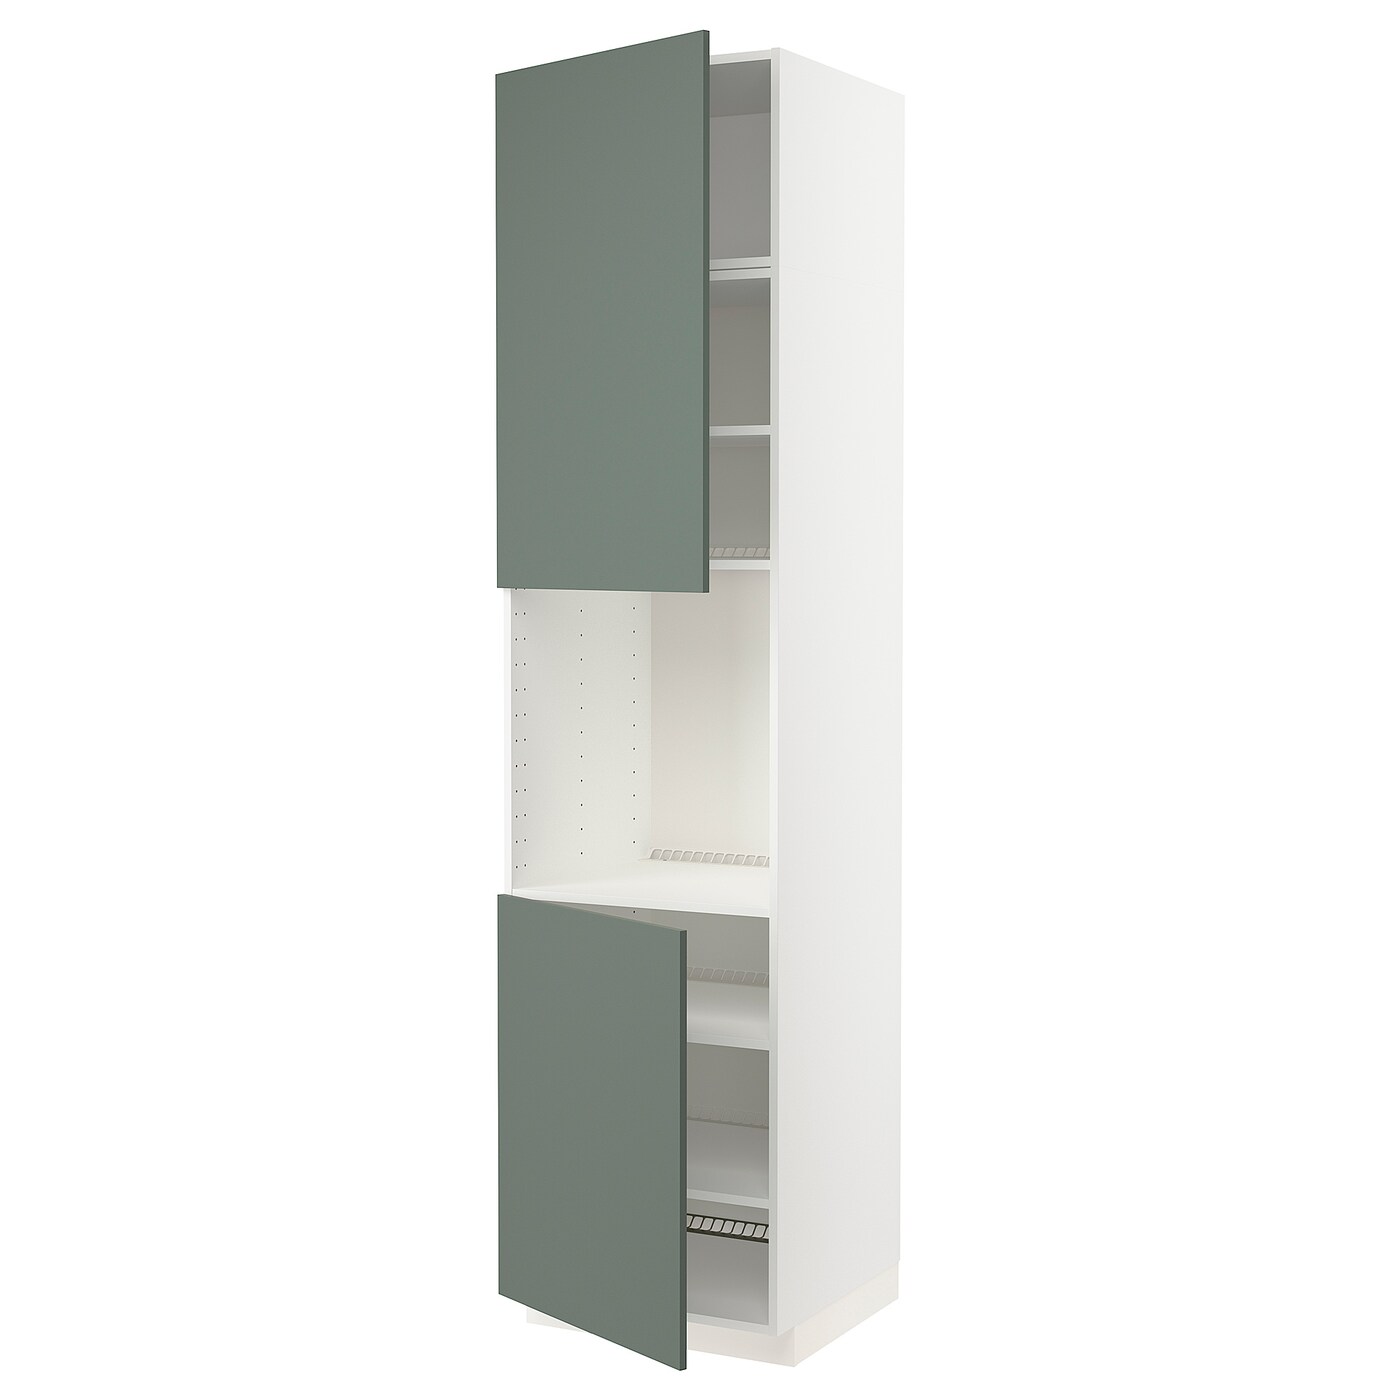 Высокий кухонный шкаф с полками - IKEA METOD/МЕТОД ИКЕА, 240х60х60 см, белый/темно-зеленый